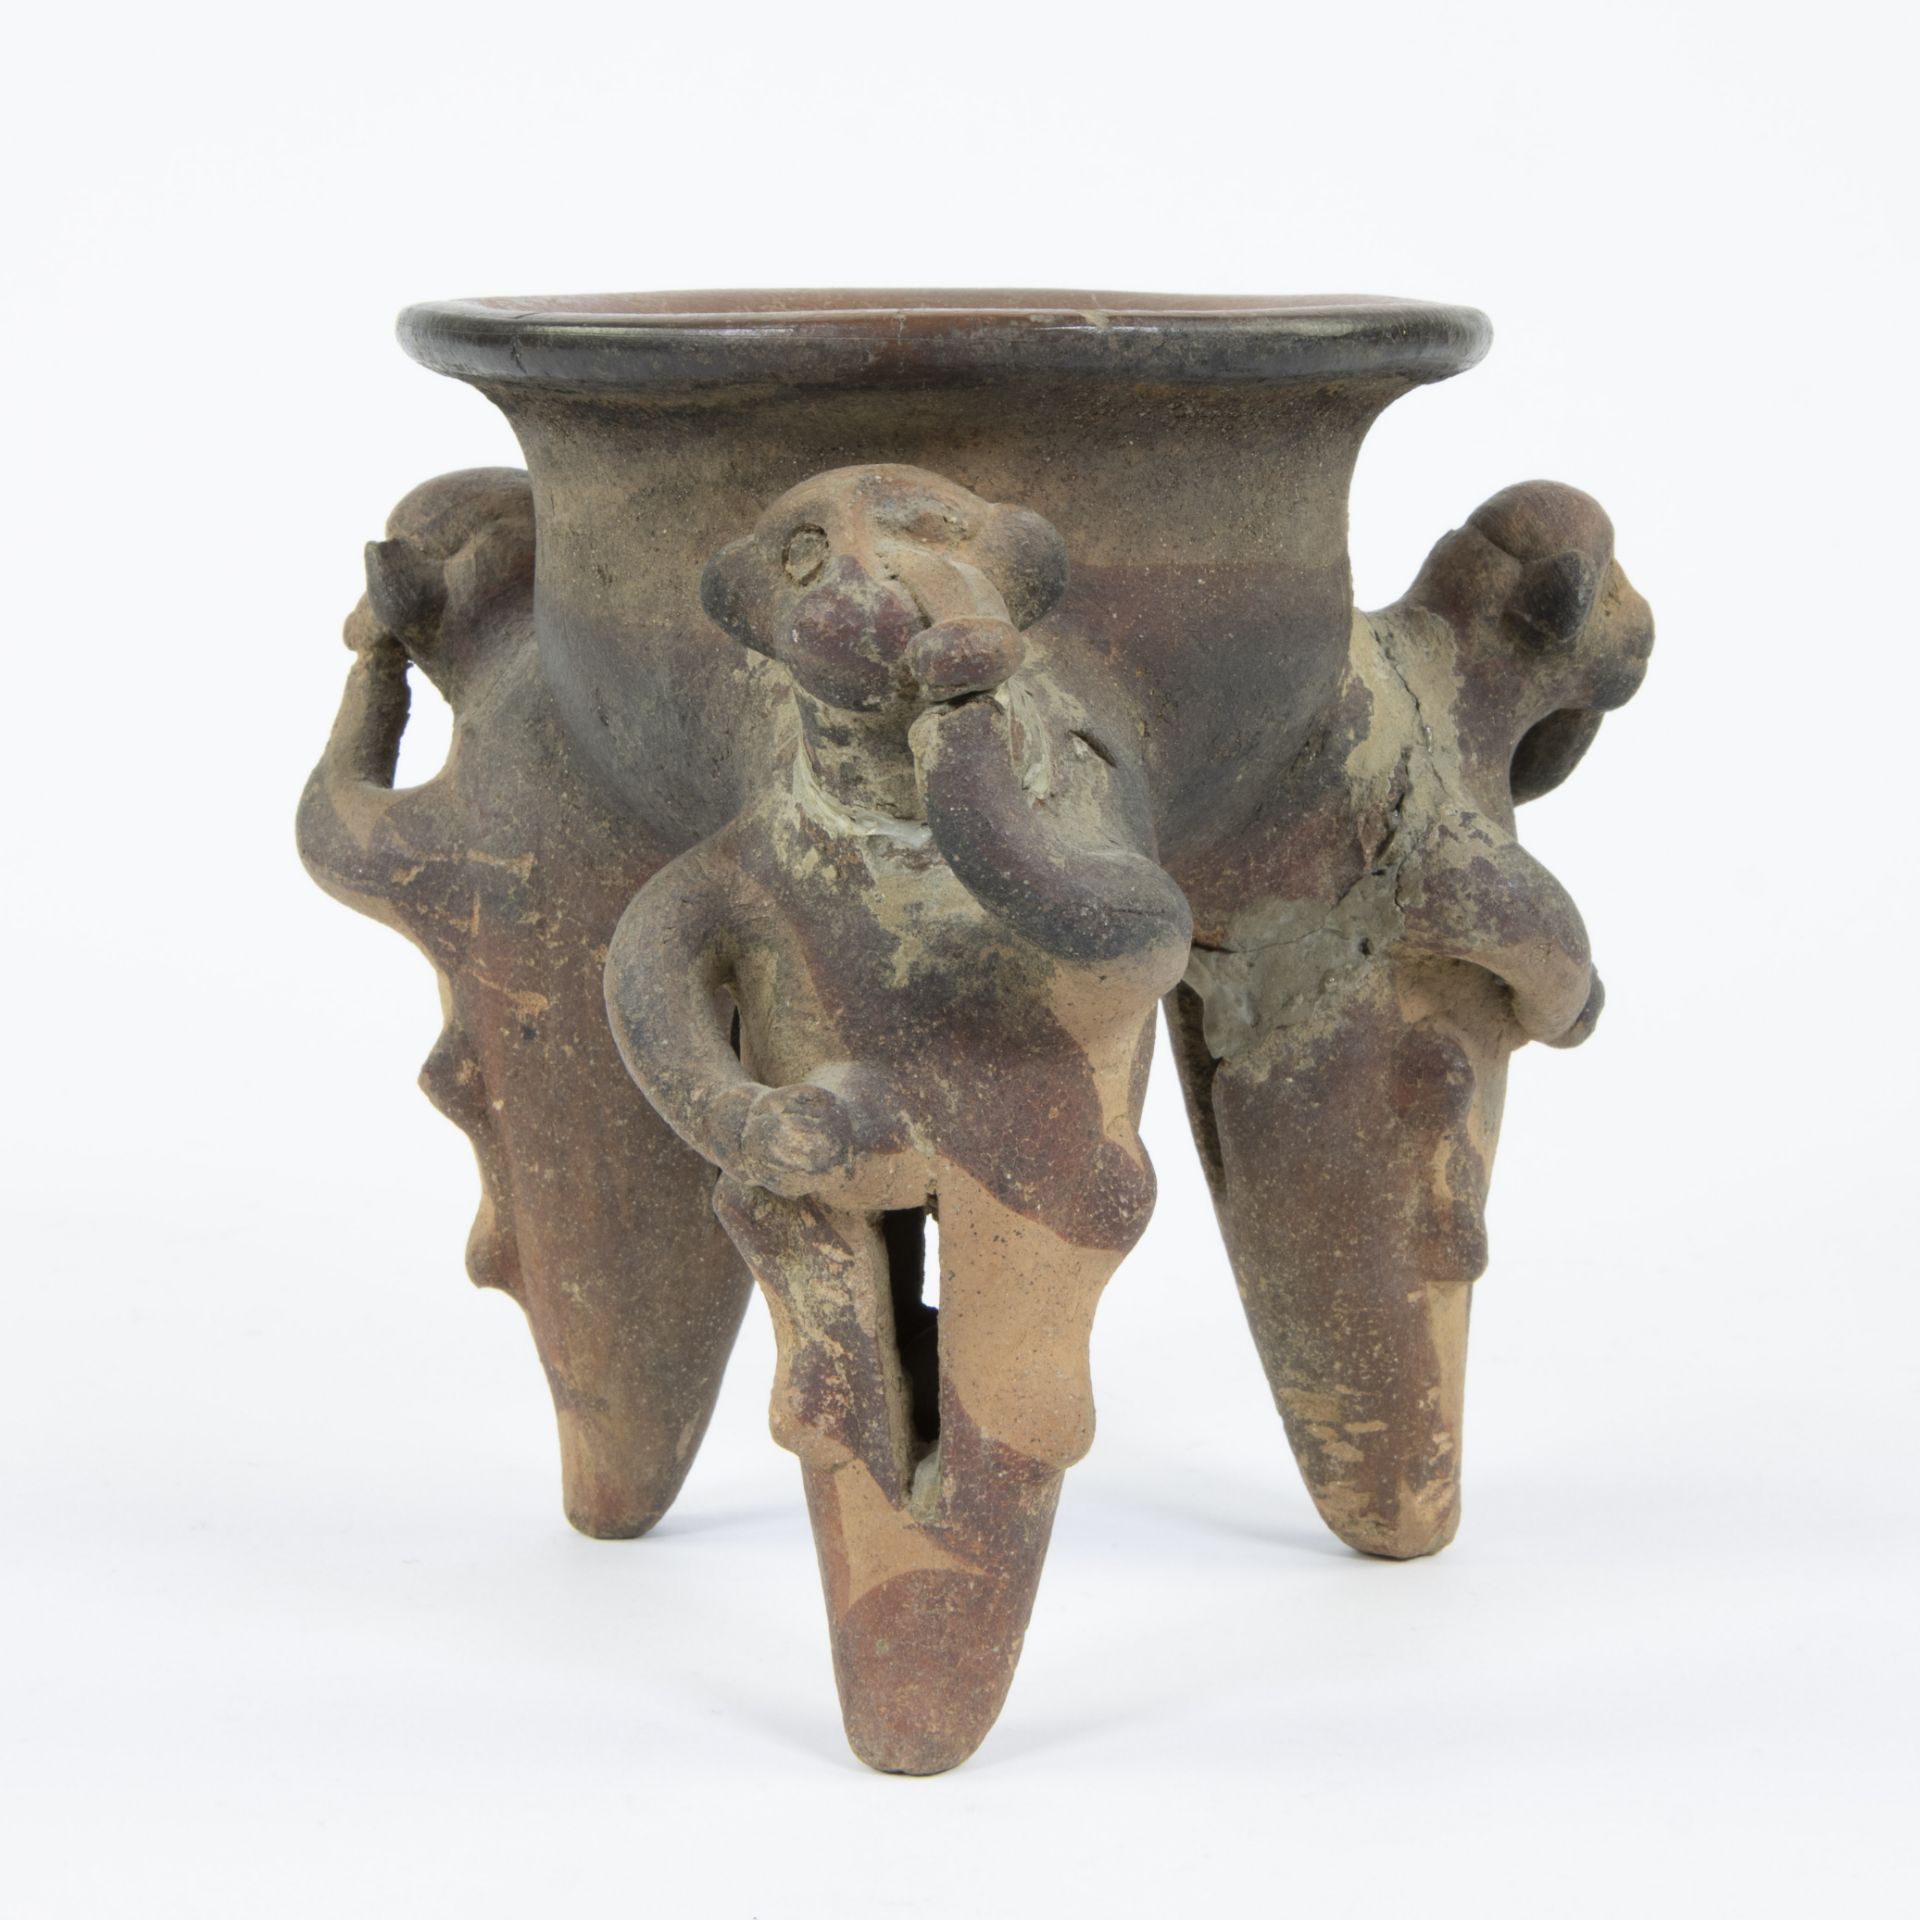 Ancient Pre Columbian Costa Rica earthenware tripot vessel